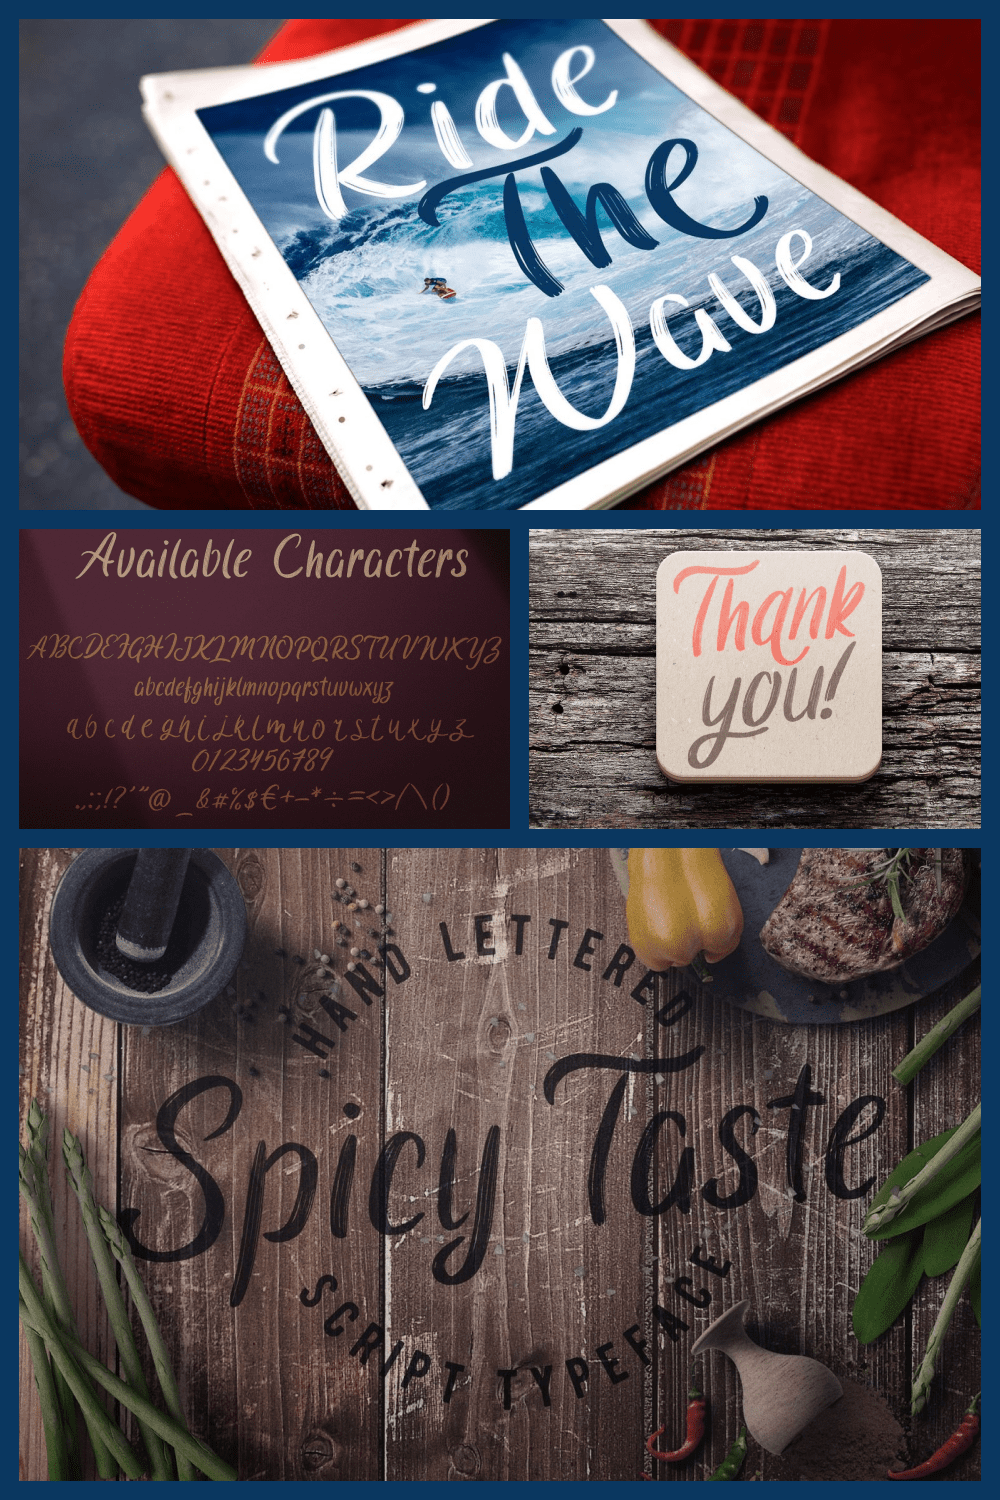 Spicy Taste Handwritten Typeface - MasterBundles - Pinterest Collage Image.